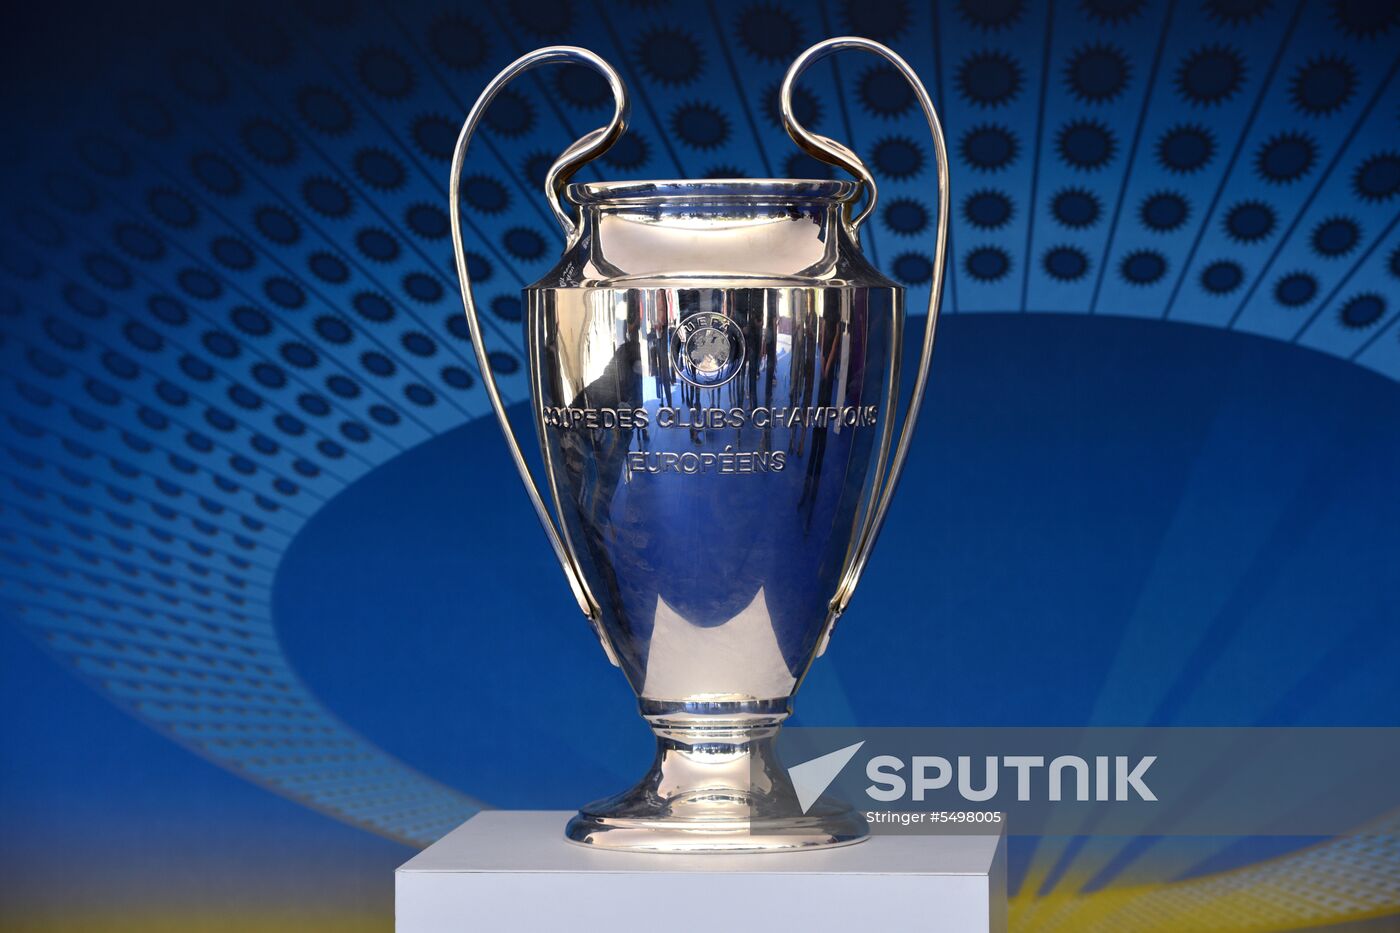 Champions League Trophy presentation in Kiev